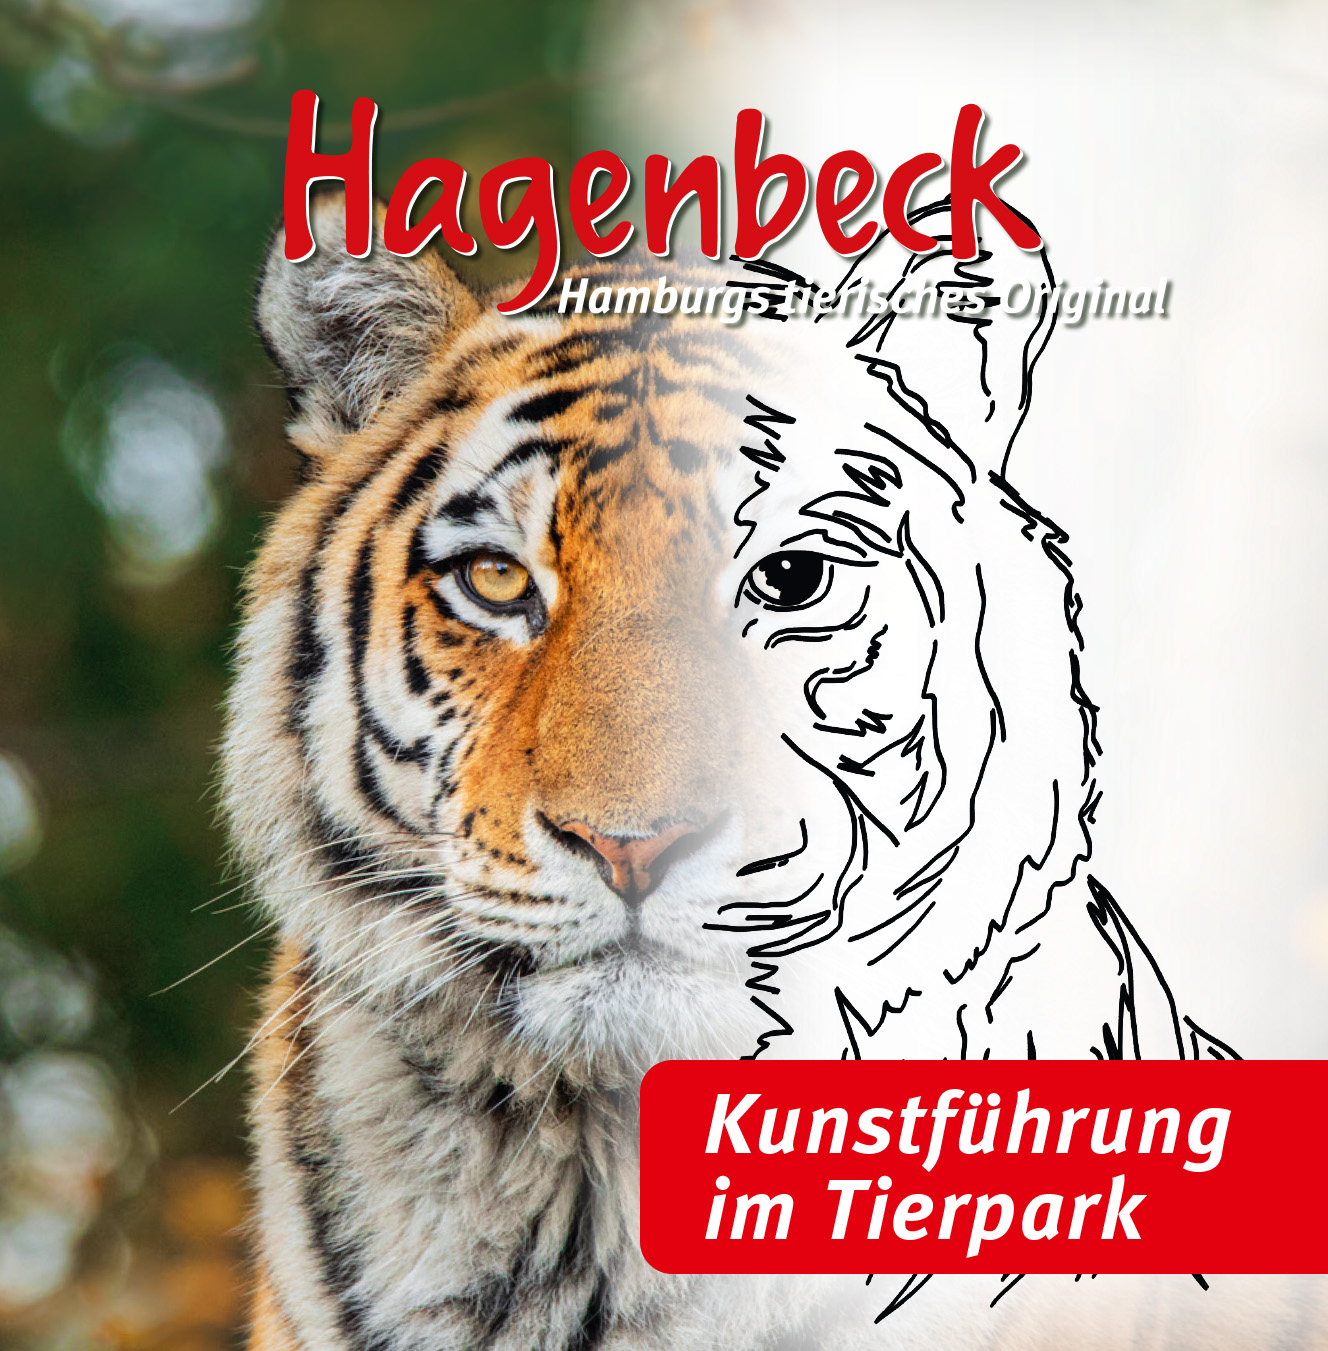 Kunst-Führung im Tierpark Hagenbeck